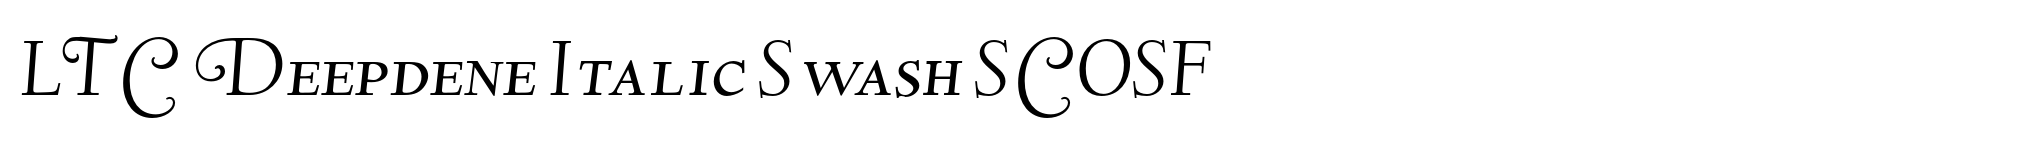 LTC Deepdene Italic Swash SCOSF image